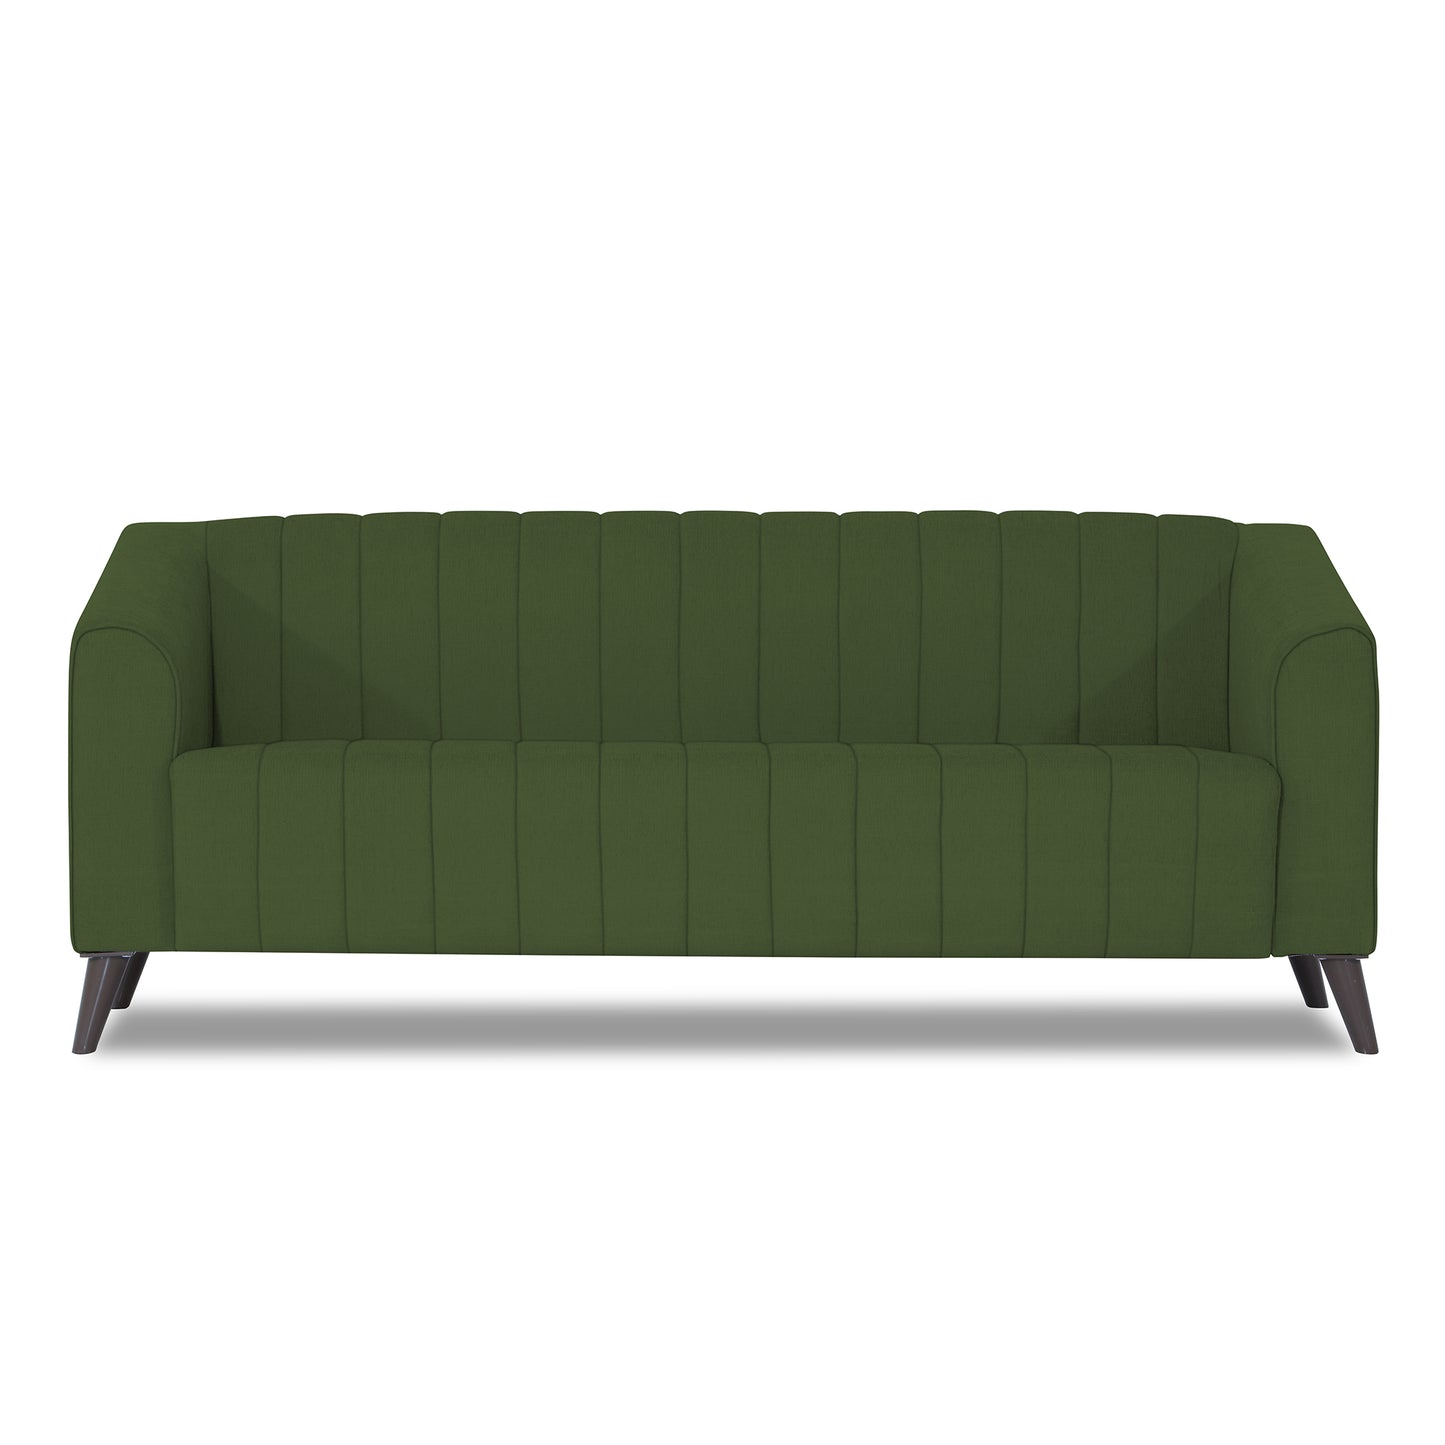 Adorn India Premium Laurel 3 Seater Sofa (Green)